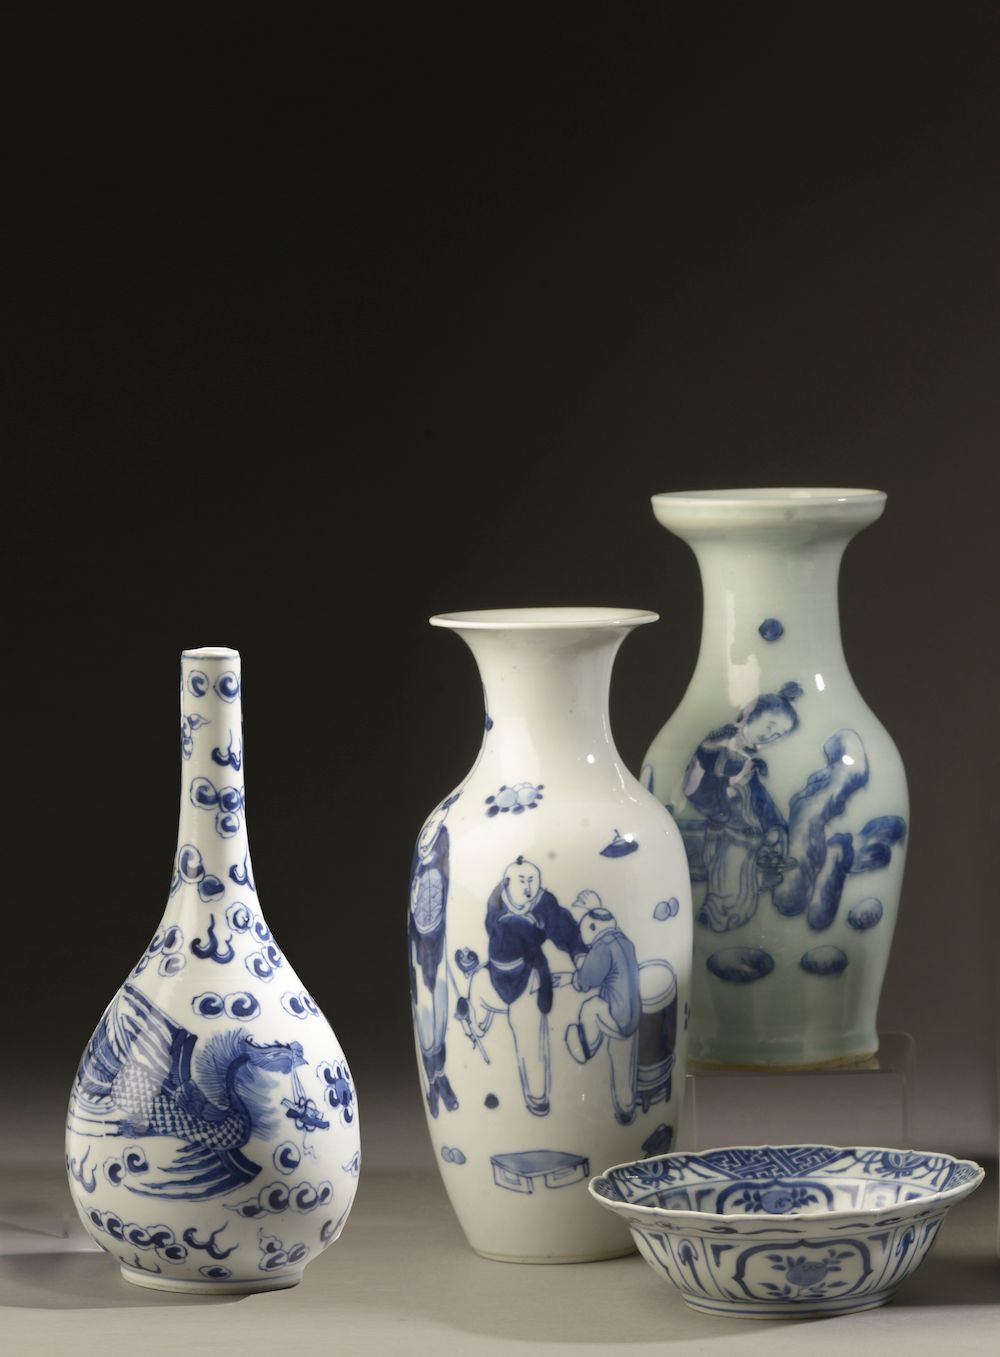 Null CHINA - Circa 1900.

Juego de porcelana azul y blanca decorada con figuras,&hellip;